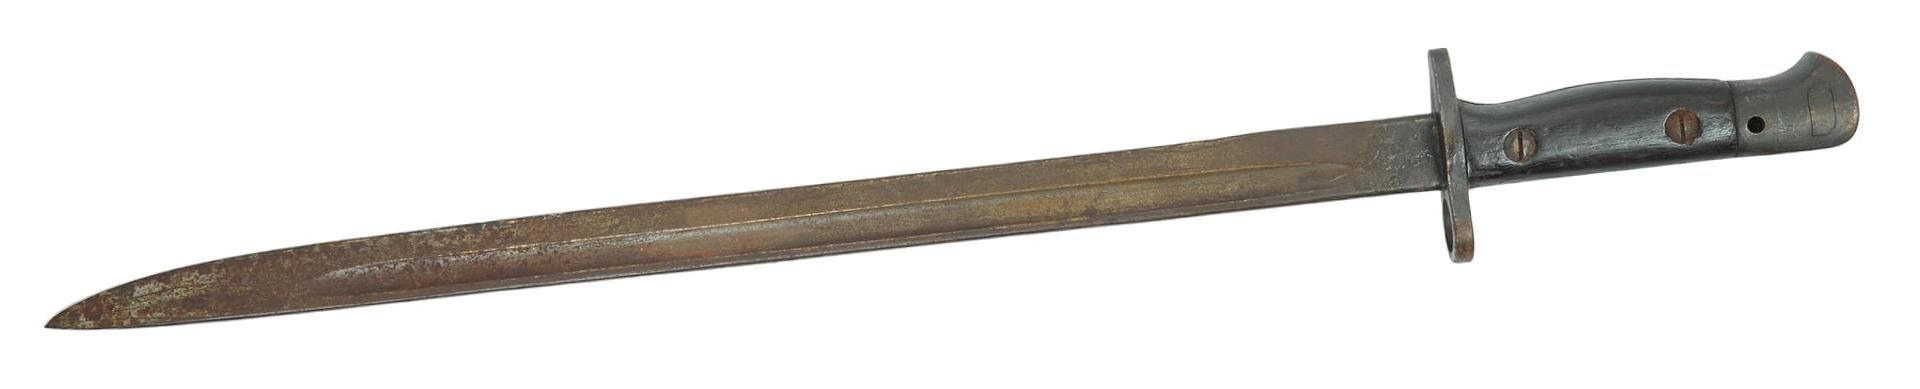 British Military WWI era SMLE M1907 Enfield Rifle Bayonet (NBW)